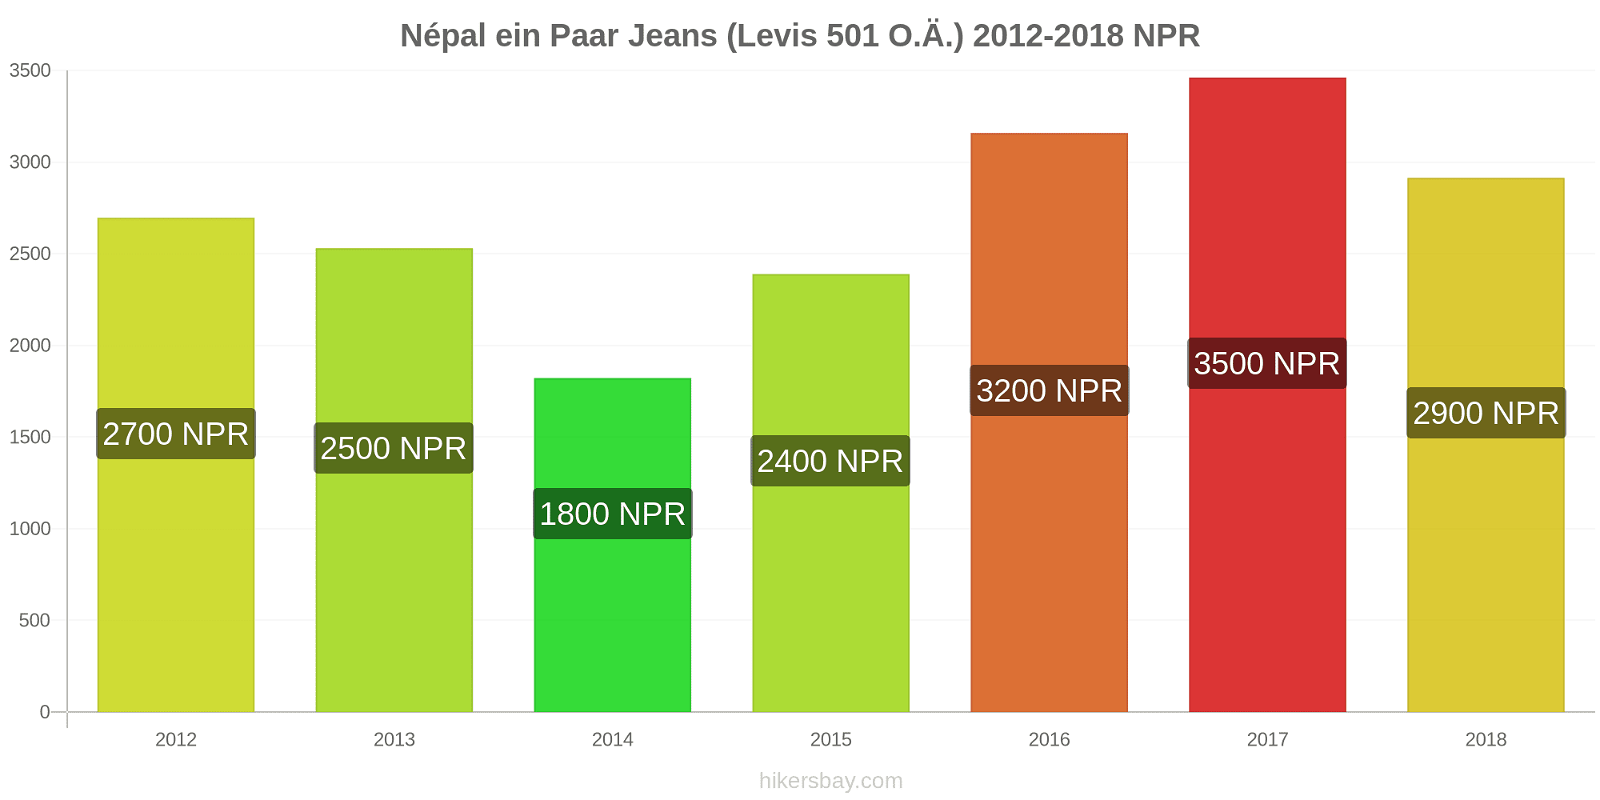 Népal Preisänderungen 1 Paar Jeans (Levis 501 oder ähnlich) hikersbay.com